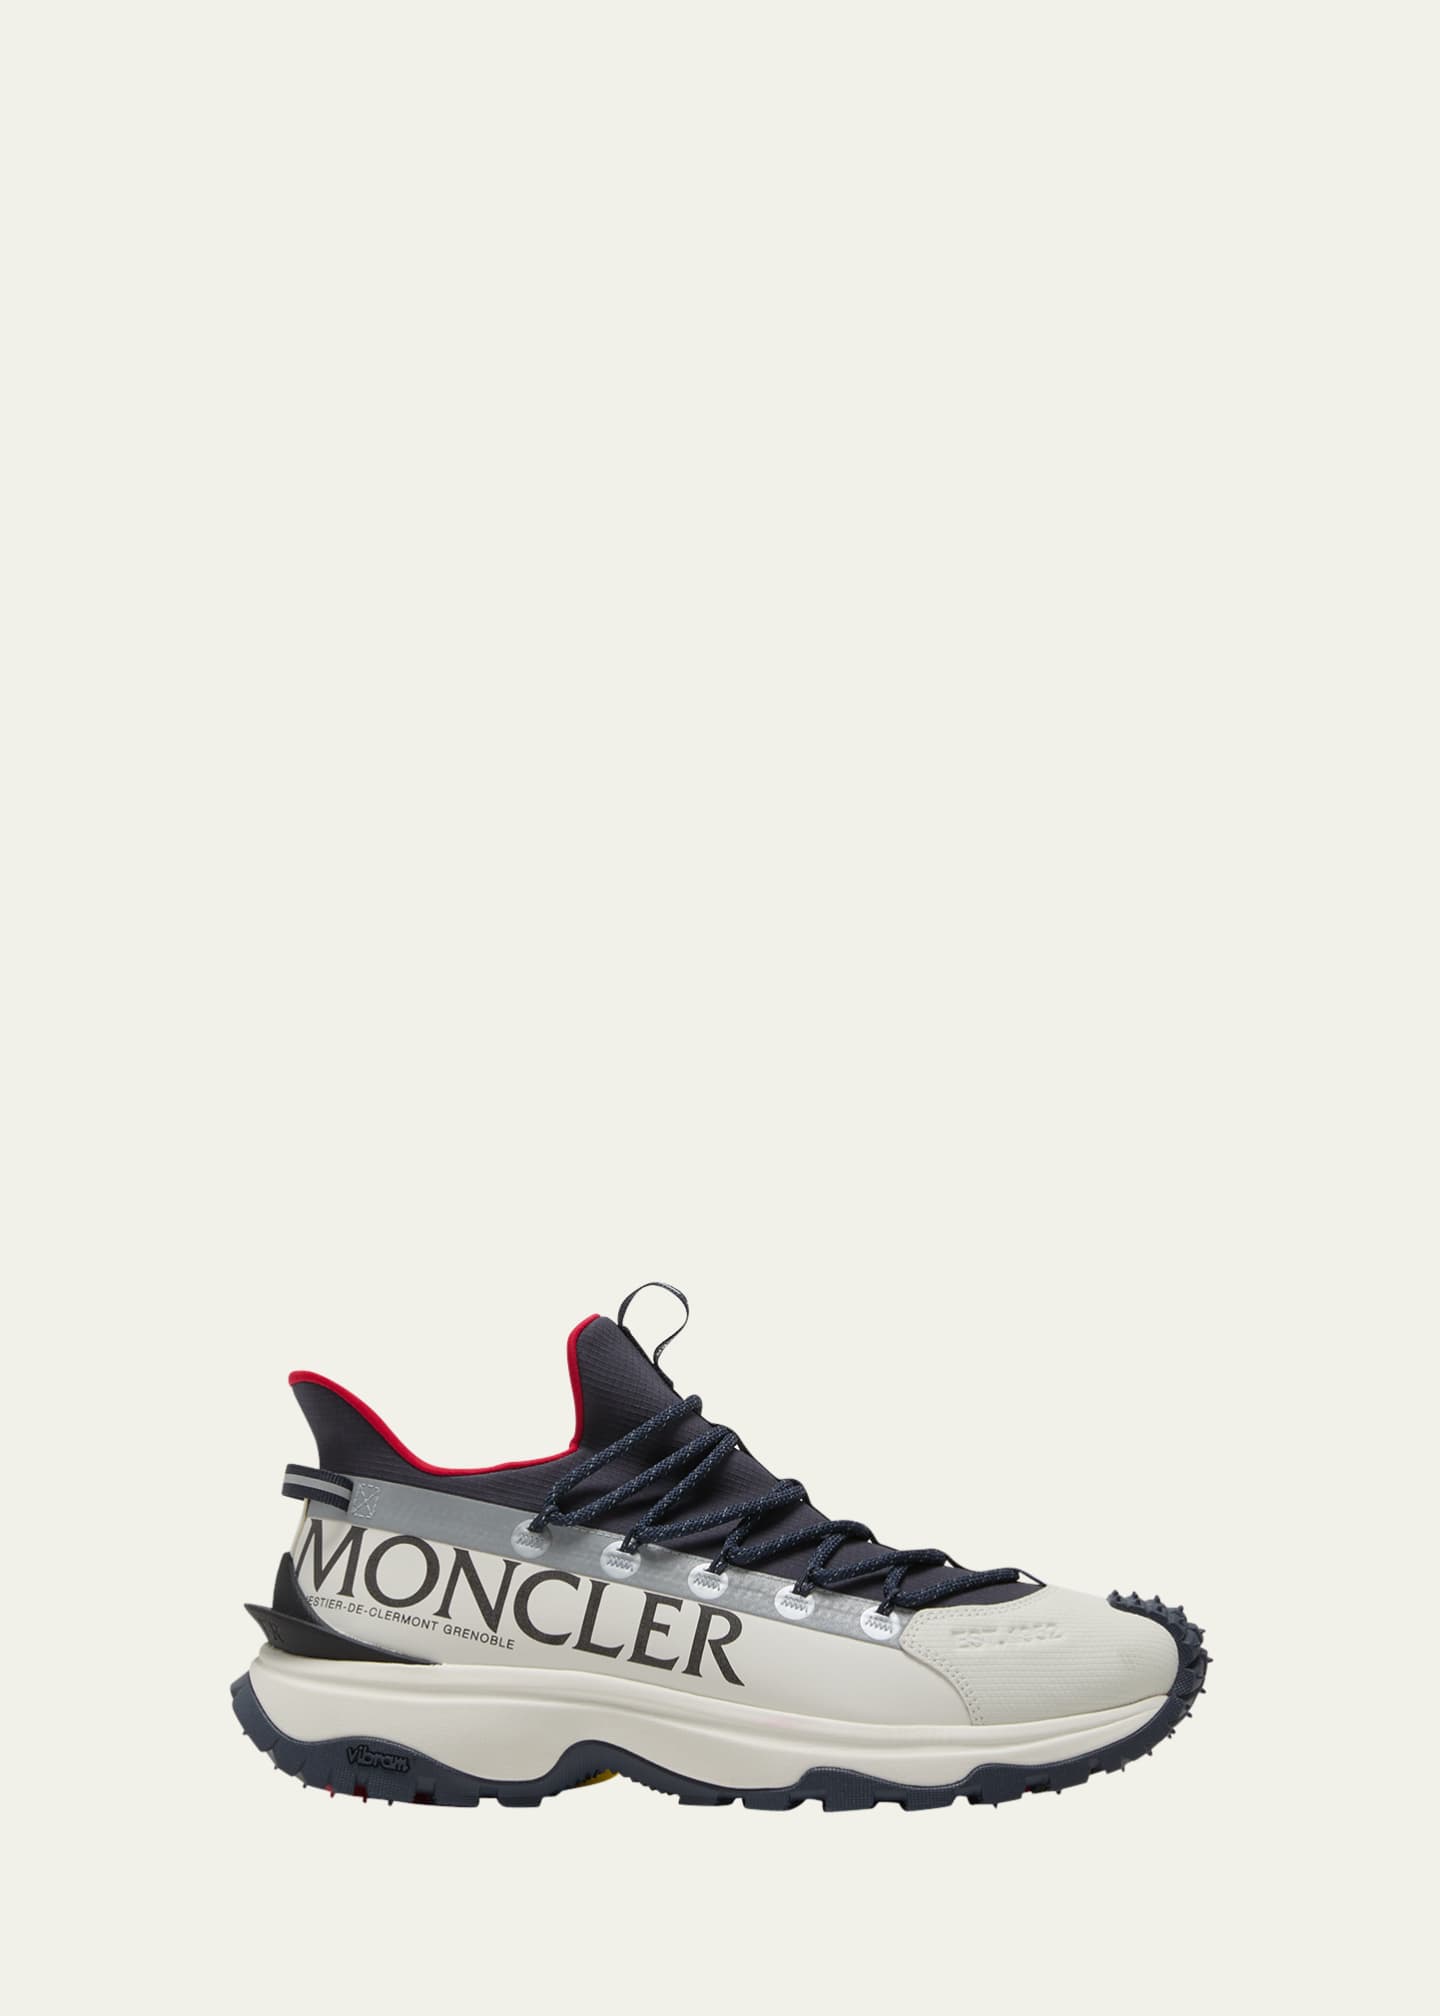 Moncler Men's Trailgrip Lite 2 Low Top Sneakers - Bergdorf Goodman